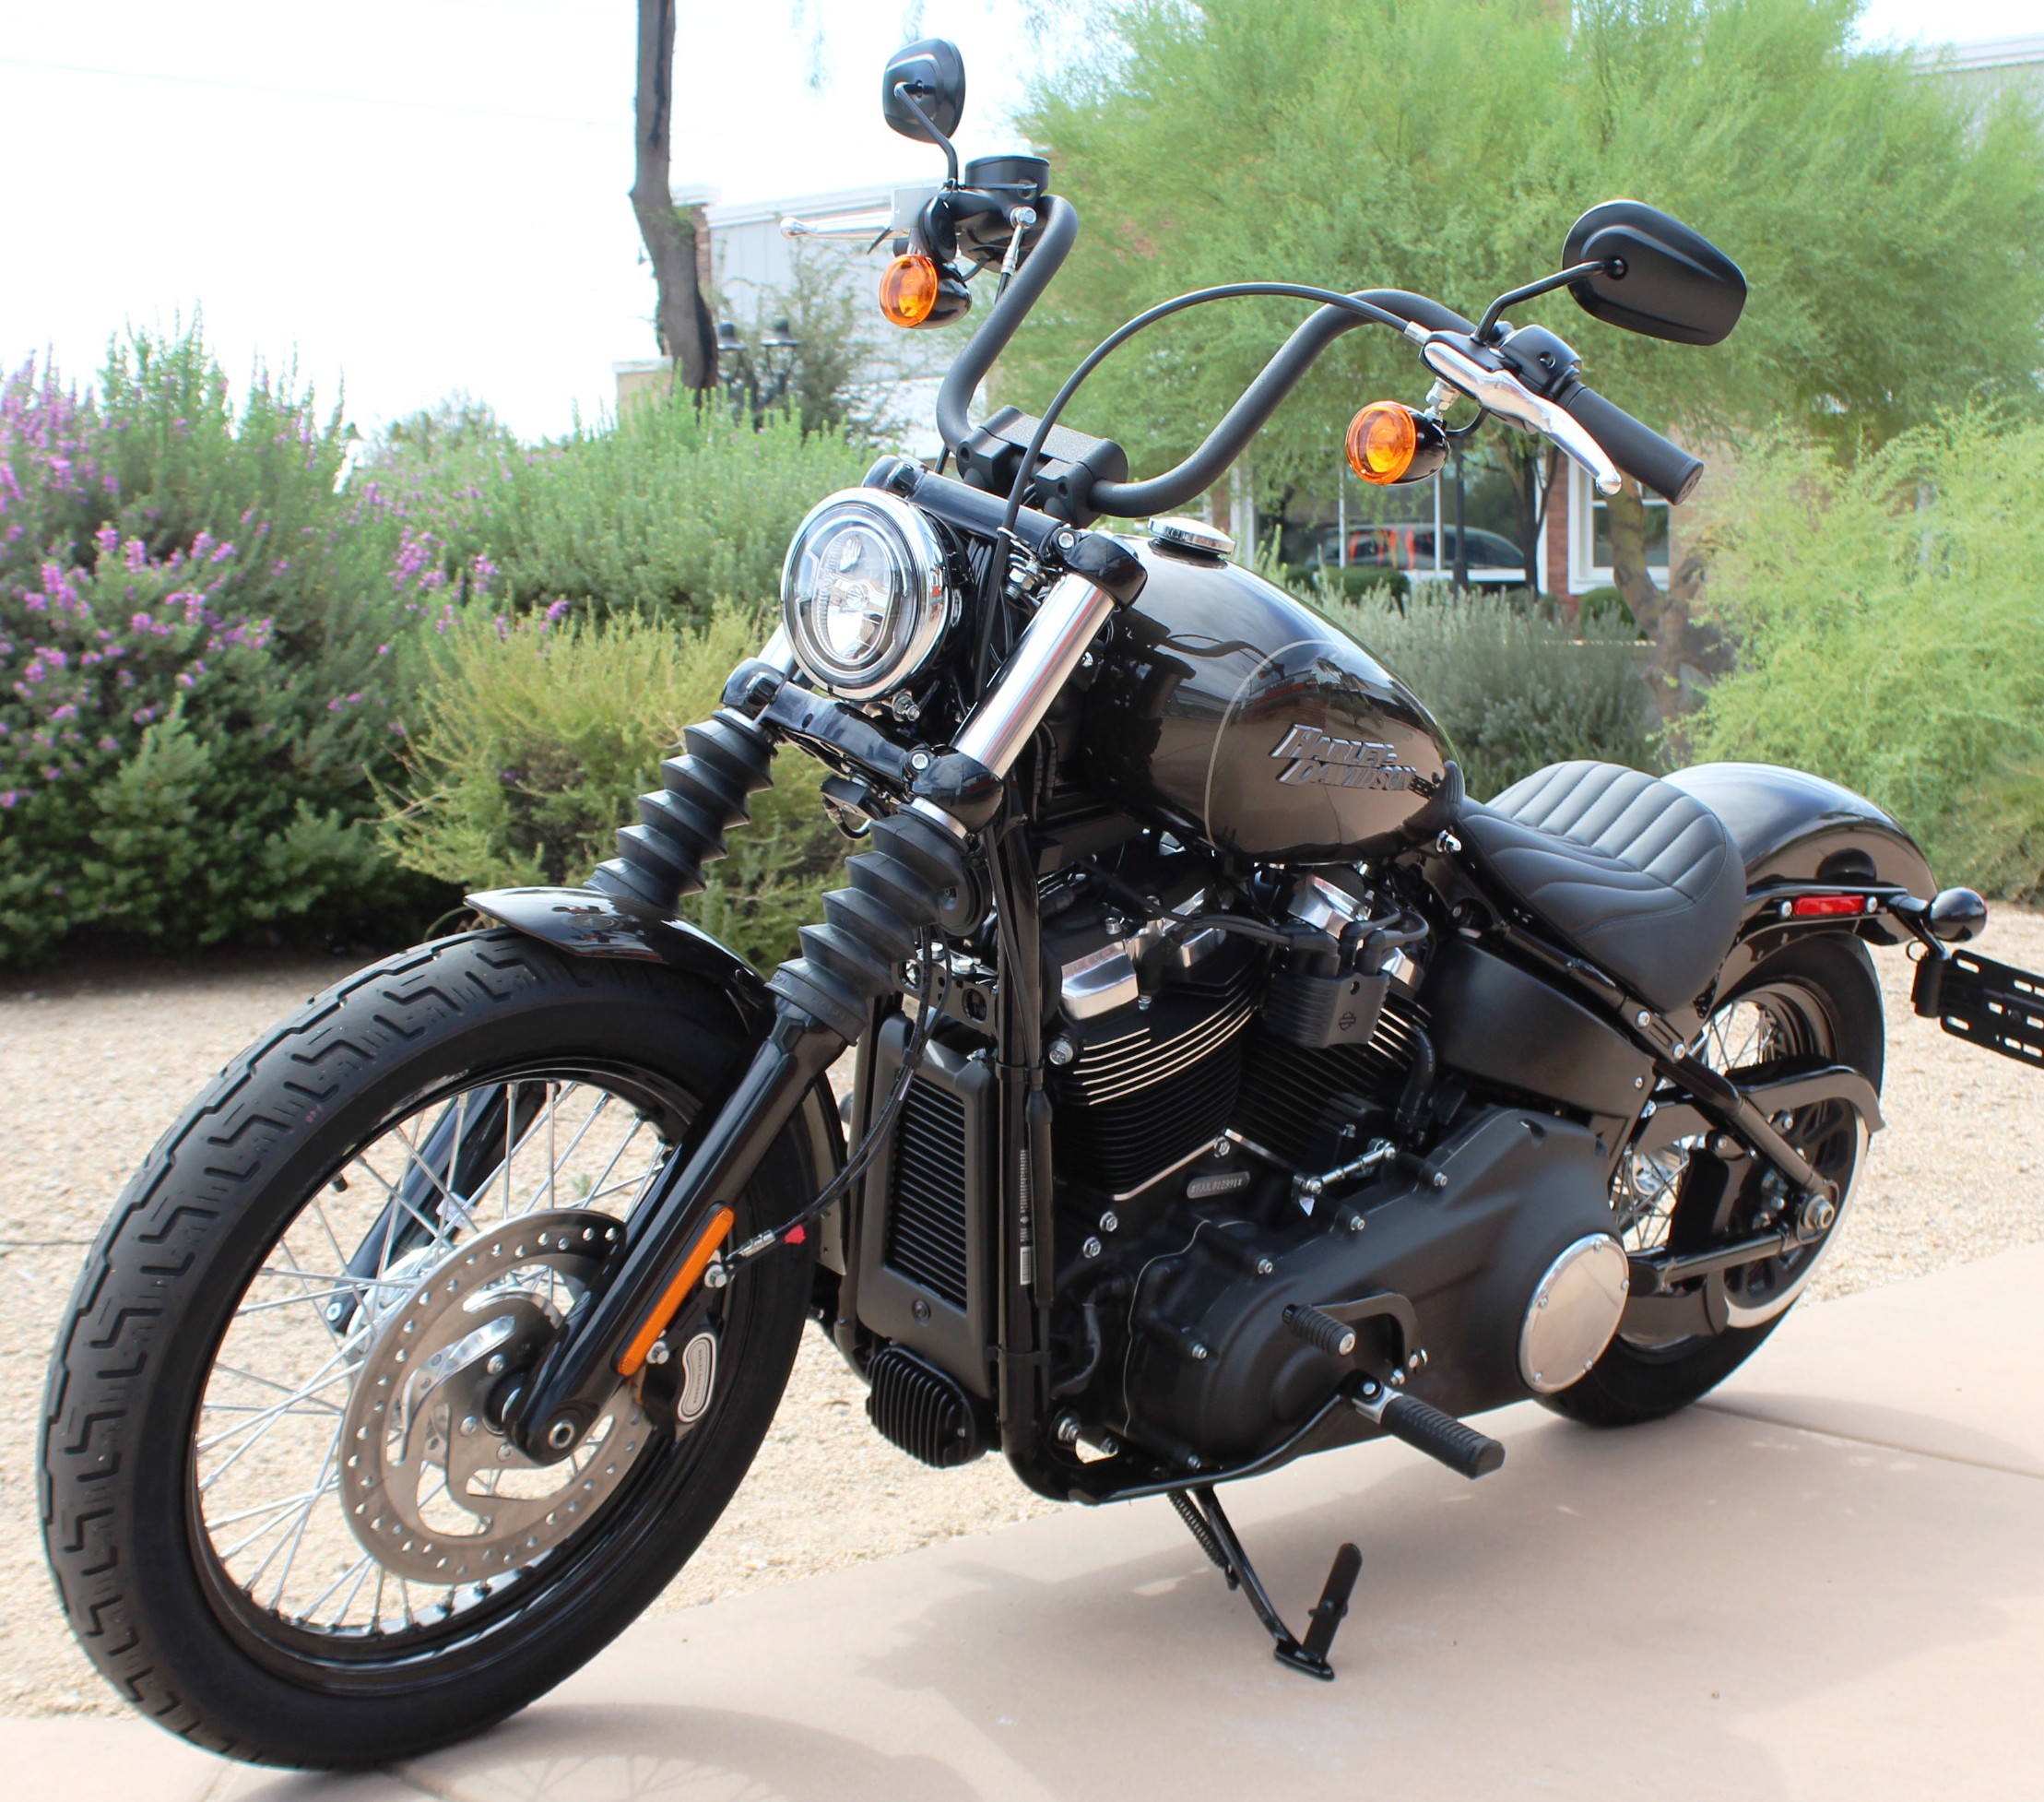 New 2020 Harley-Davidson Street Bob in Chandler #HD026956 ...